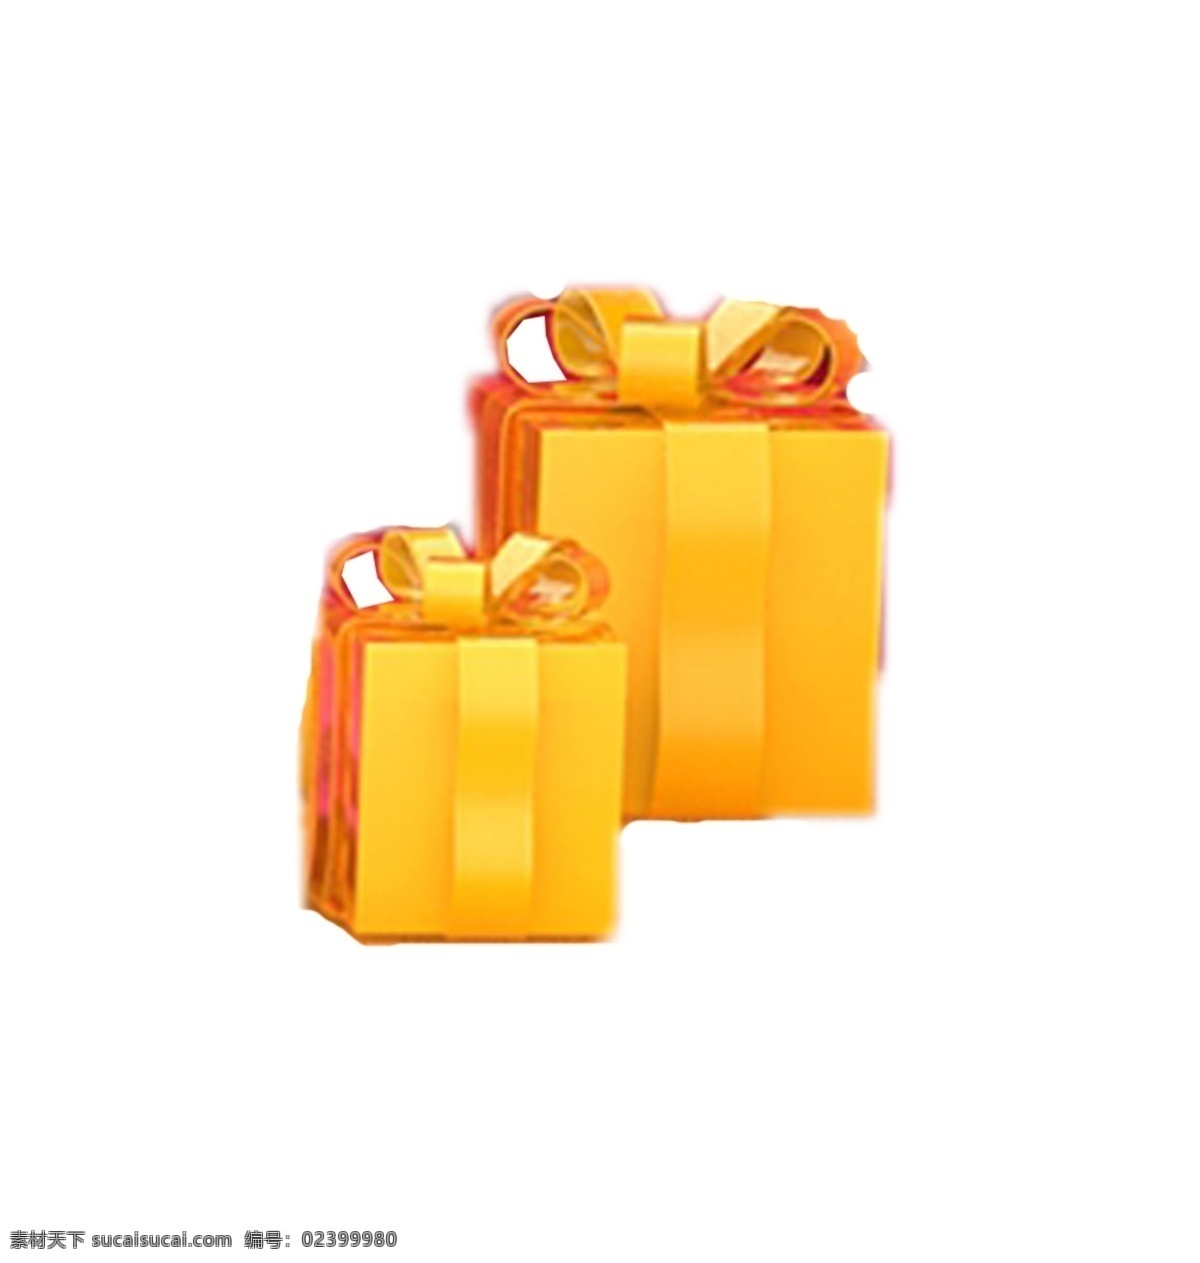 礼物盒盒子 金黄色 鲜艳 靓丽